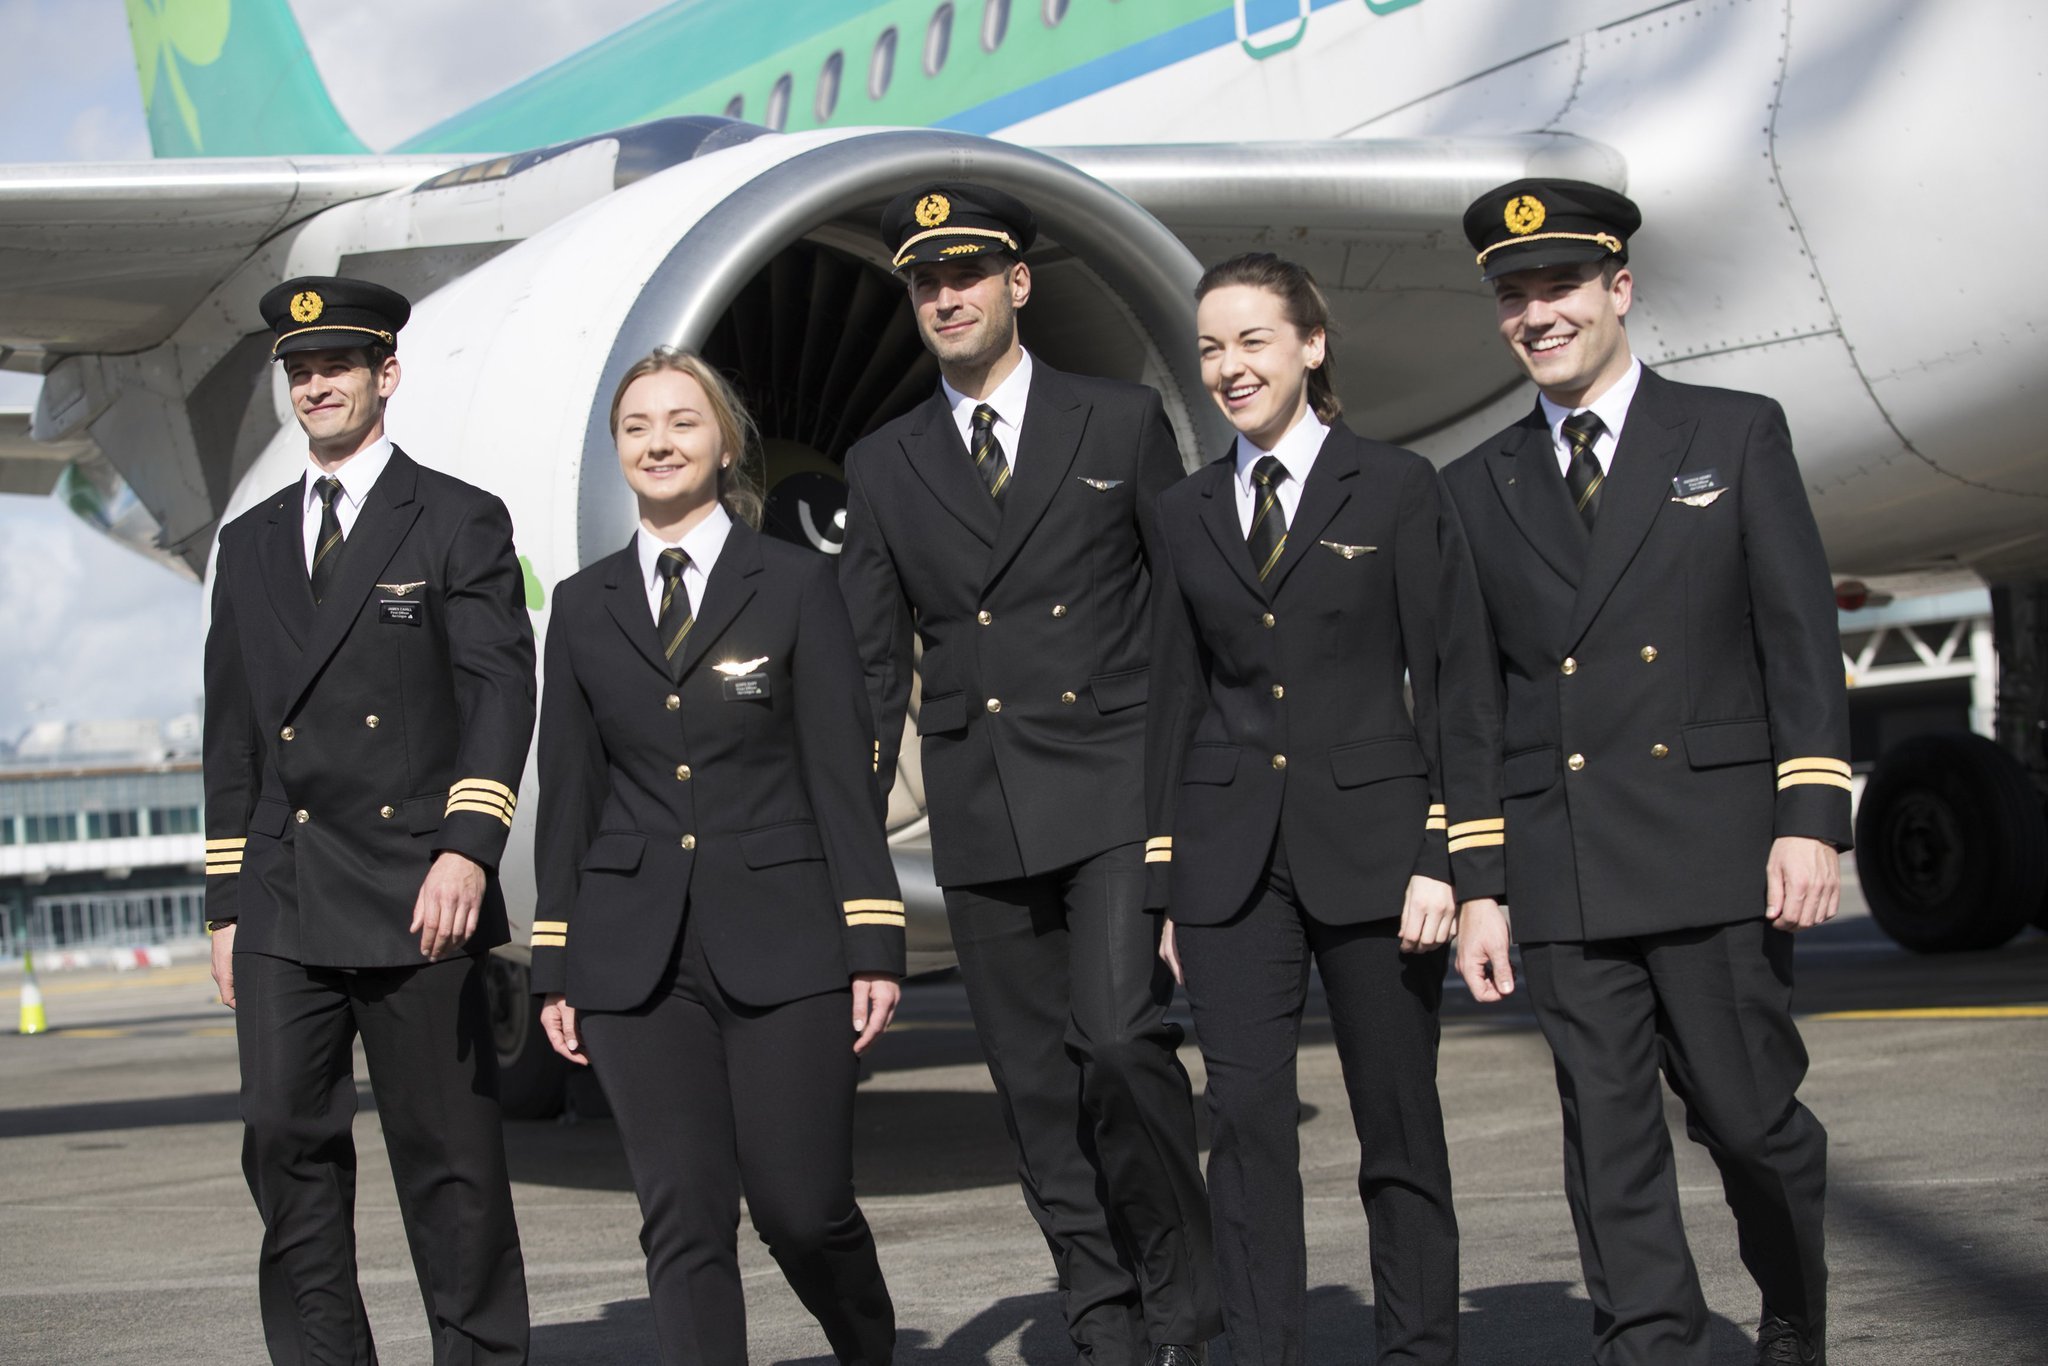 Aer Lingus униформа